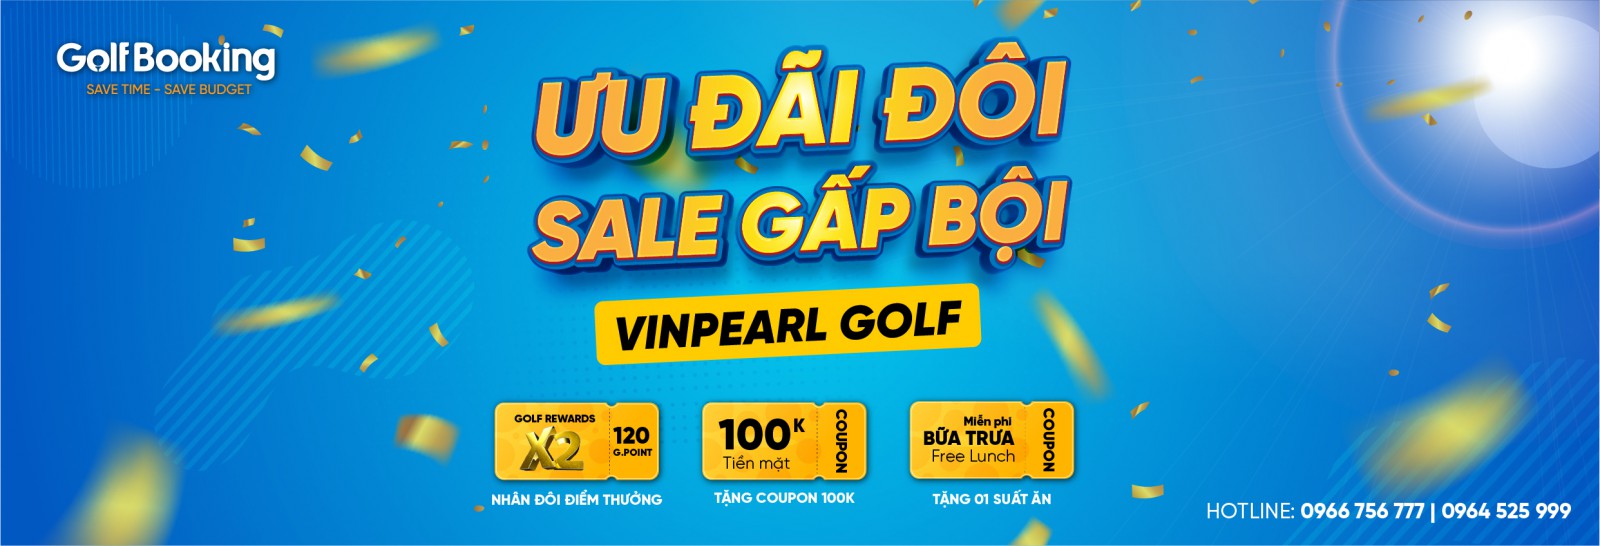 Vinpearl Golf Promotion